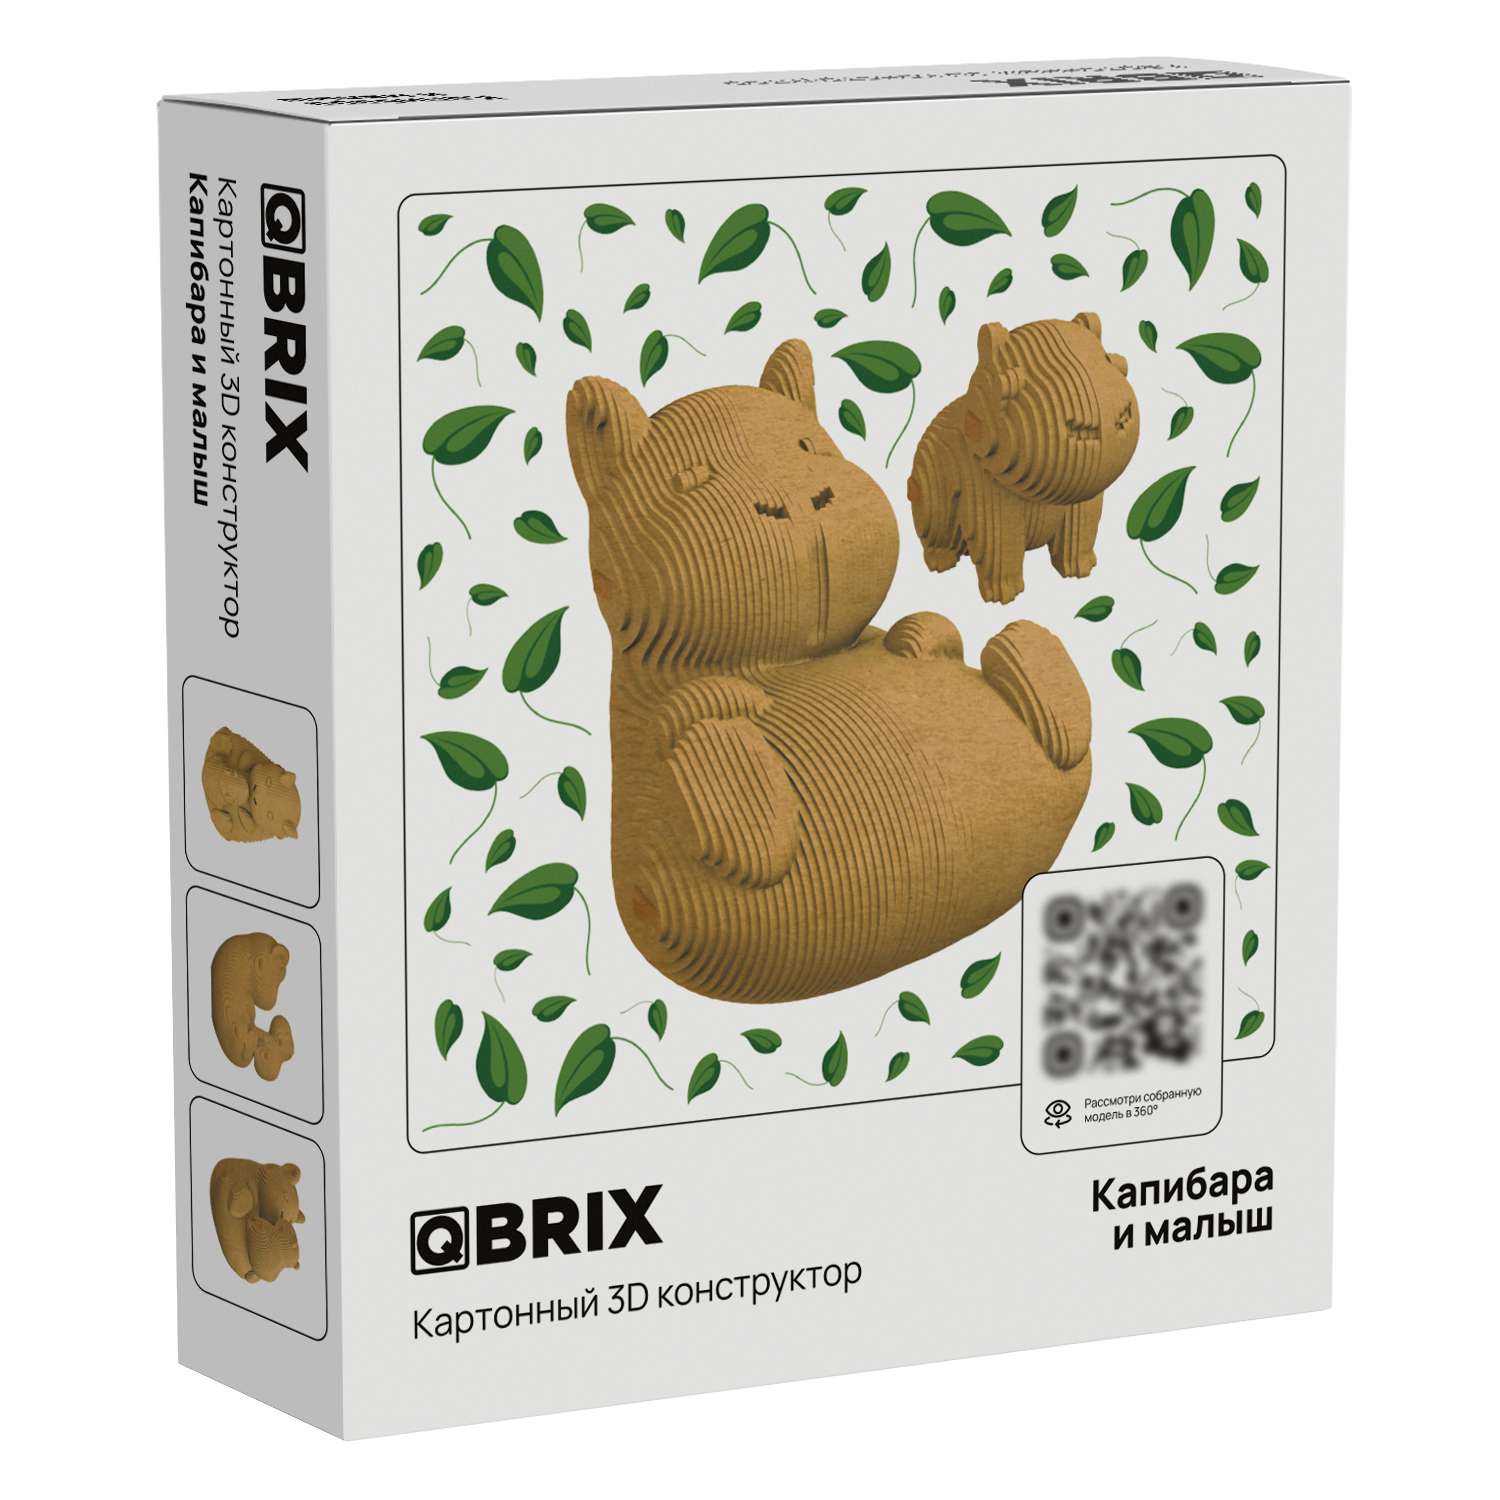 Конструктор QBRIX 3D картонный Капибара и малыш 20043 20043 - фото 1